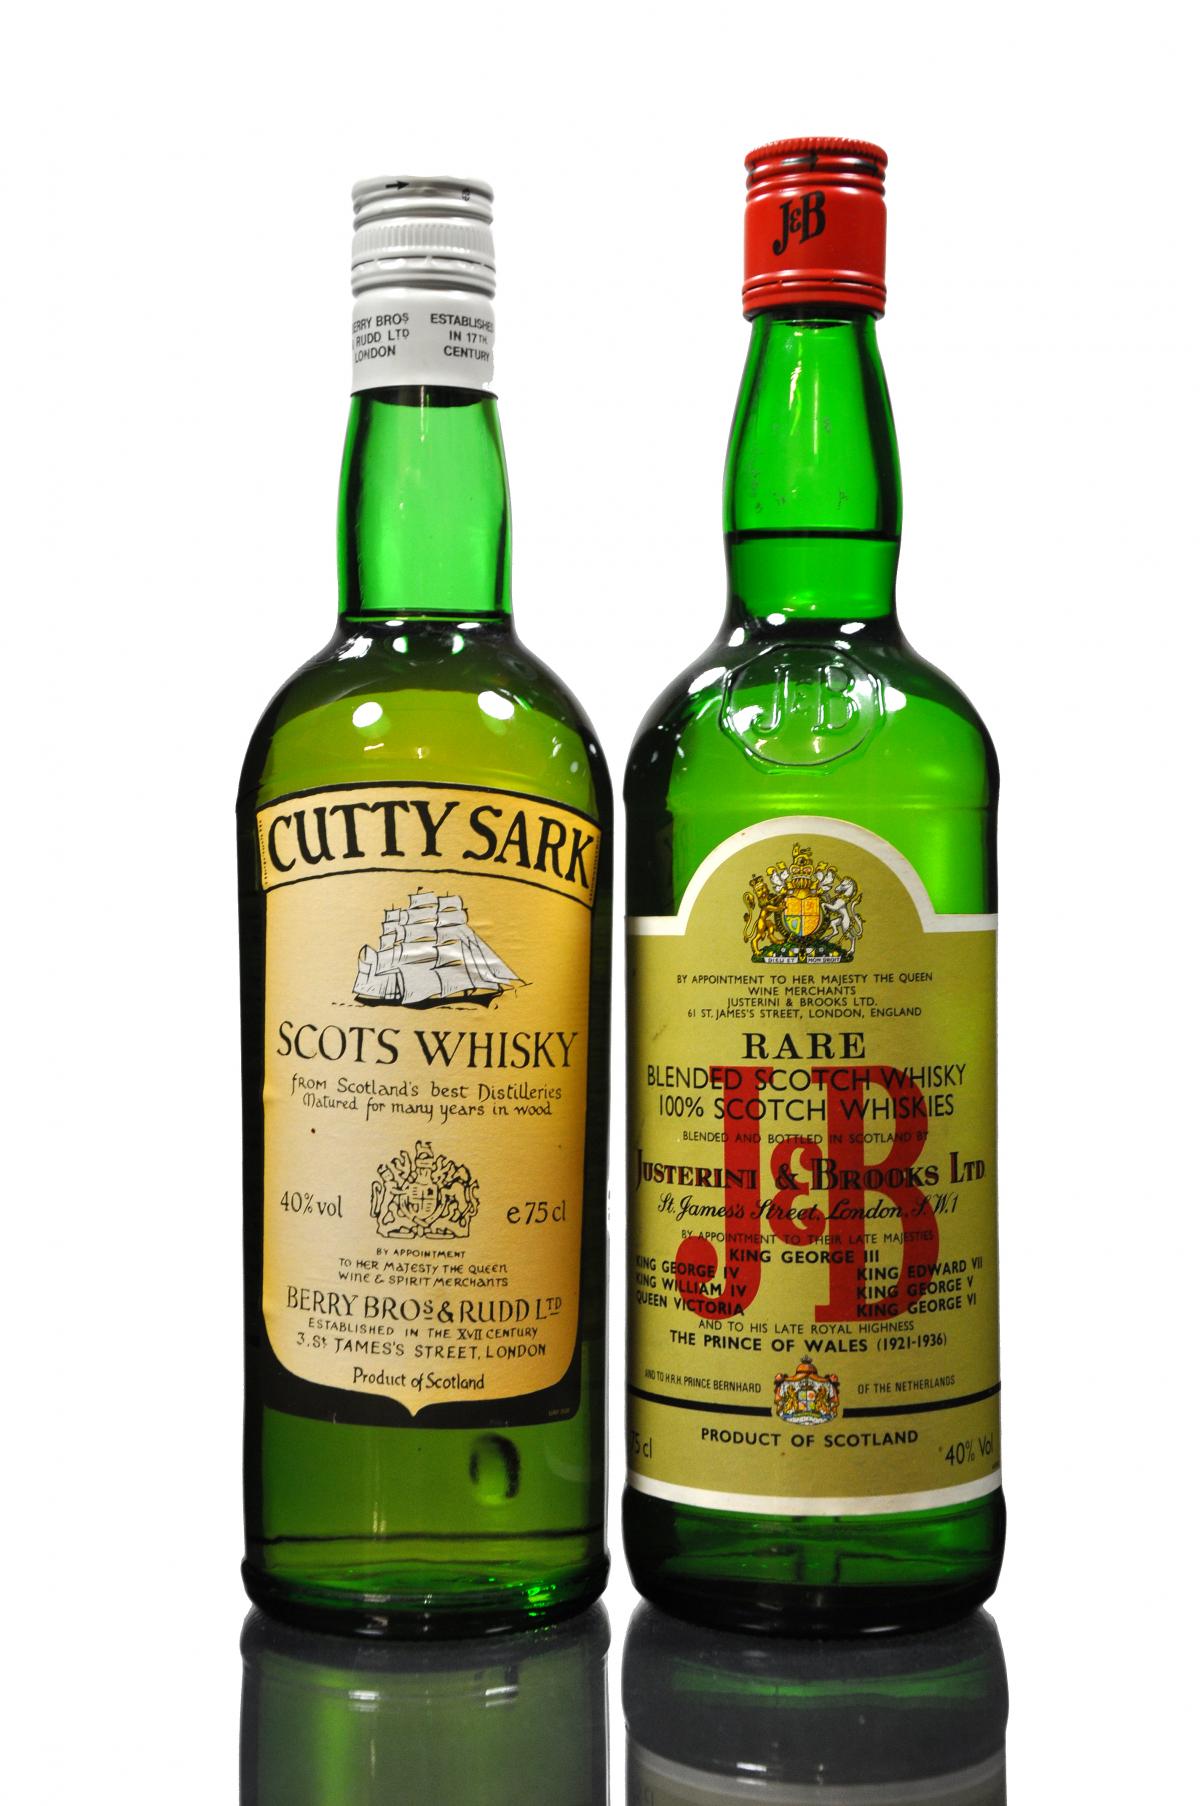 J&B - Cutty Sark